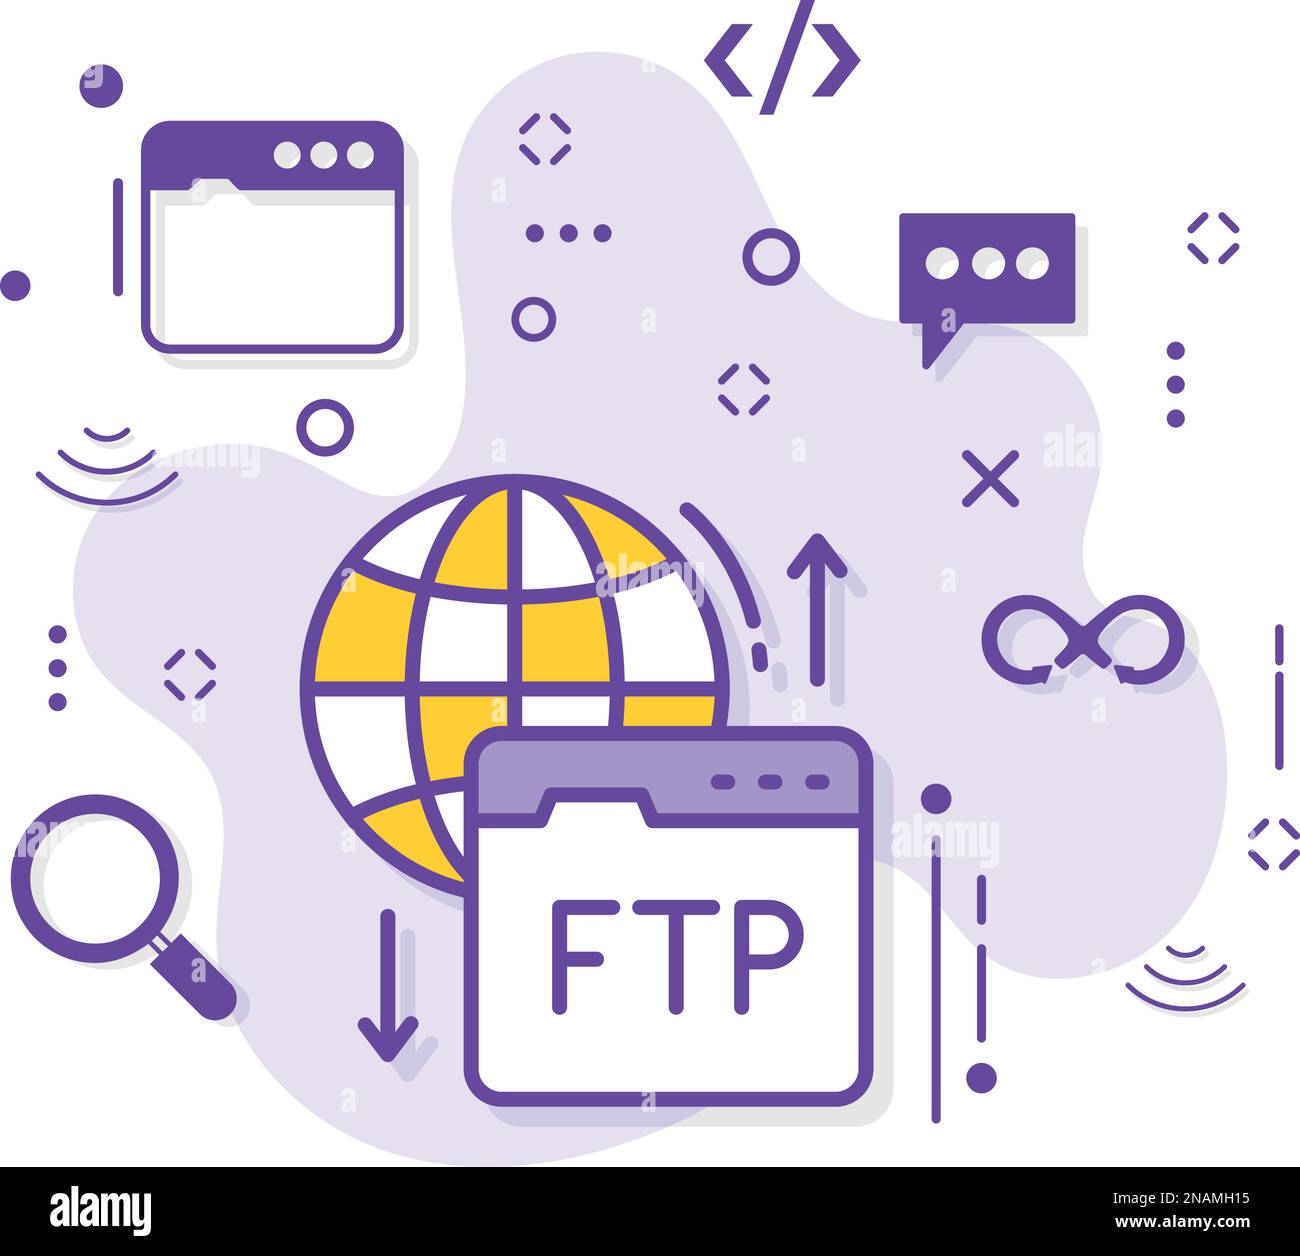 Illustrazione del concetto di FTP pubblico e privato, disegno dell'icona vettoriale del protocollo di trasferimento di file, Cloud computing e servizi di hosting Web Symbol Illustrazione Vettoriale